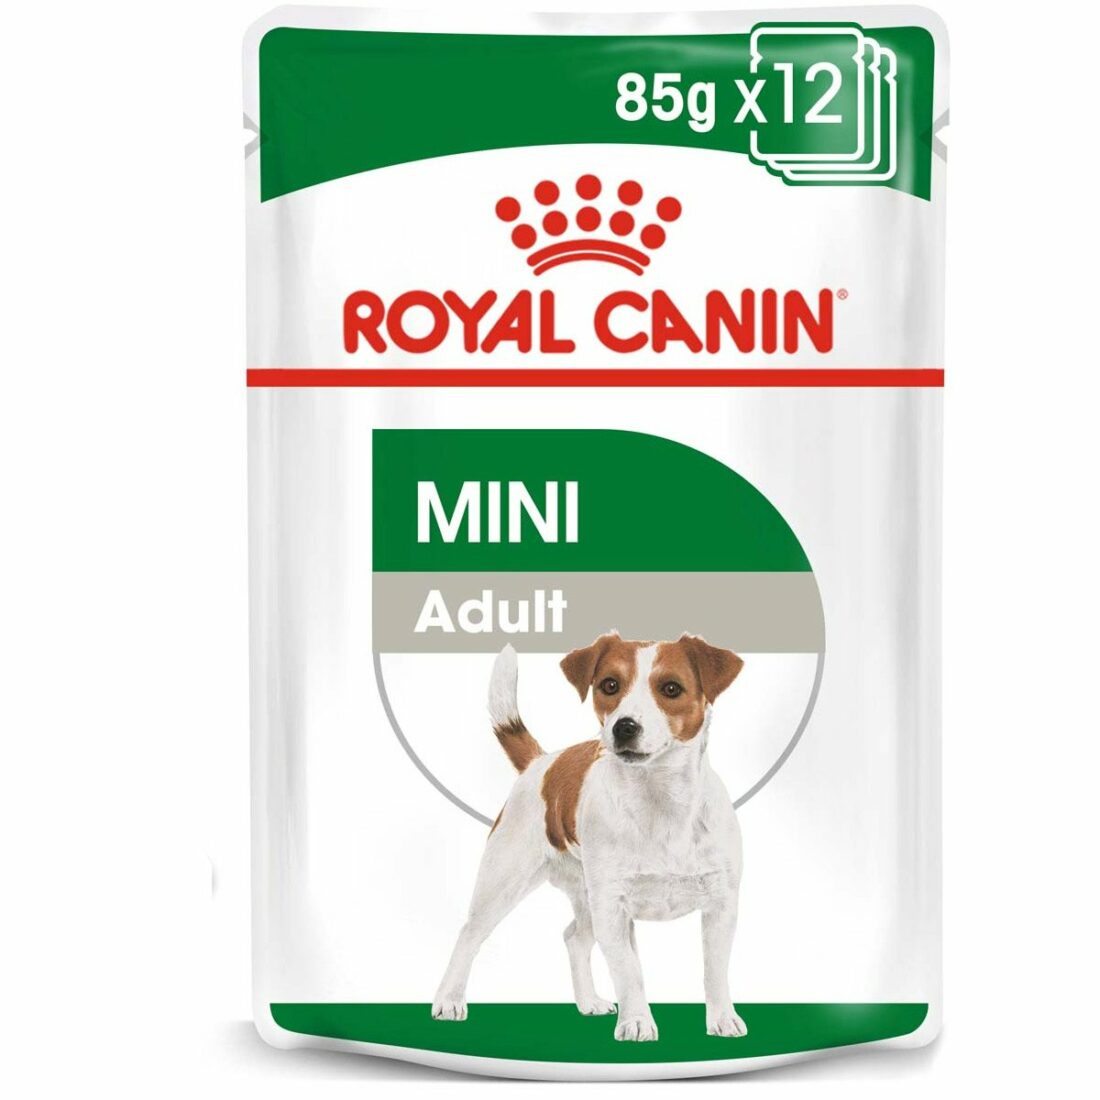 ROYAL CANIN MINI ADULT kapsička pro dospělé malé